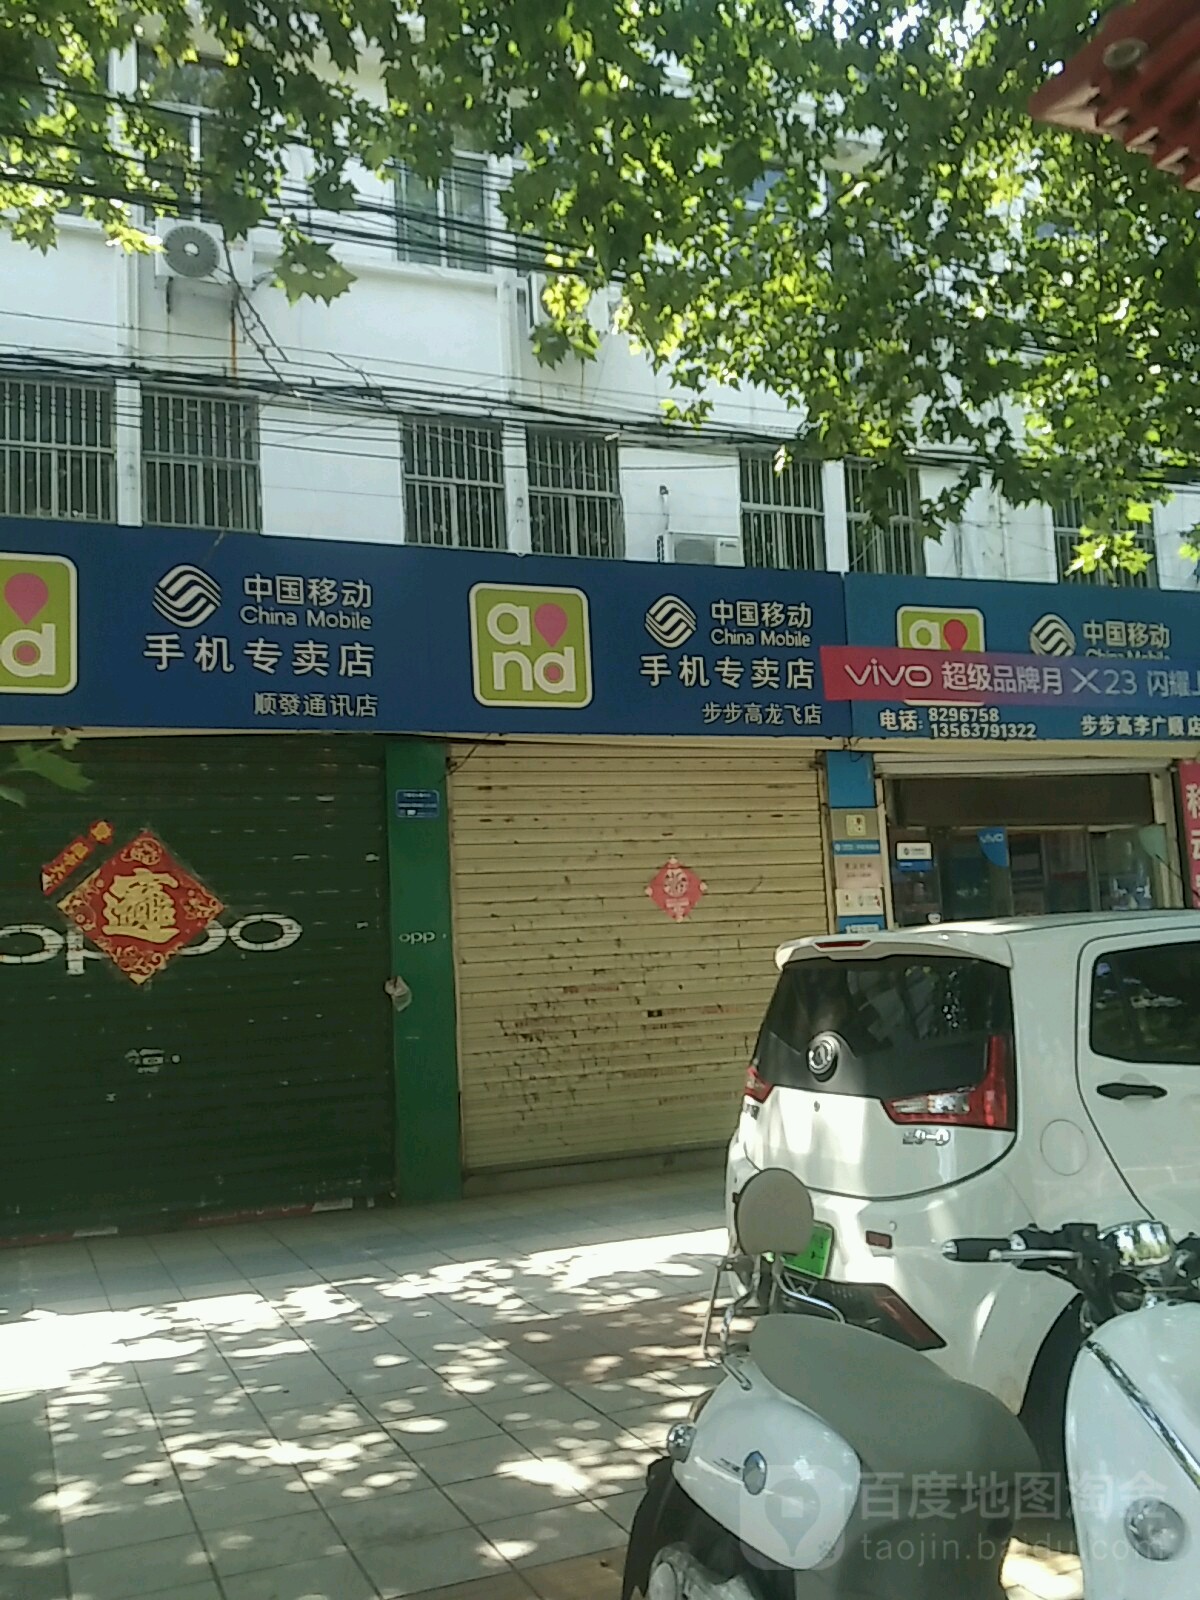 中国移动手机专卖店顺发通讯店